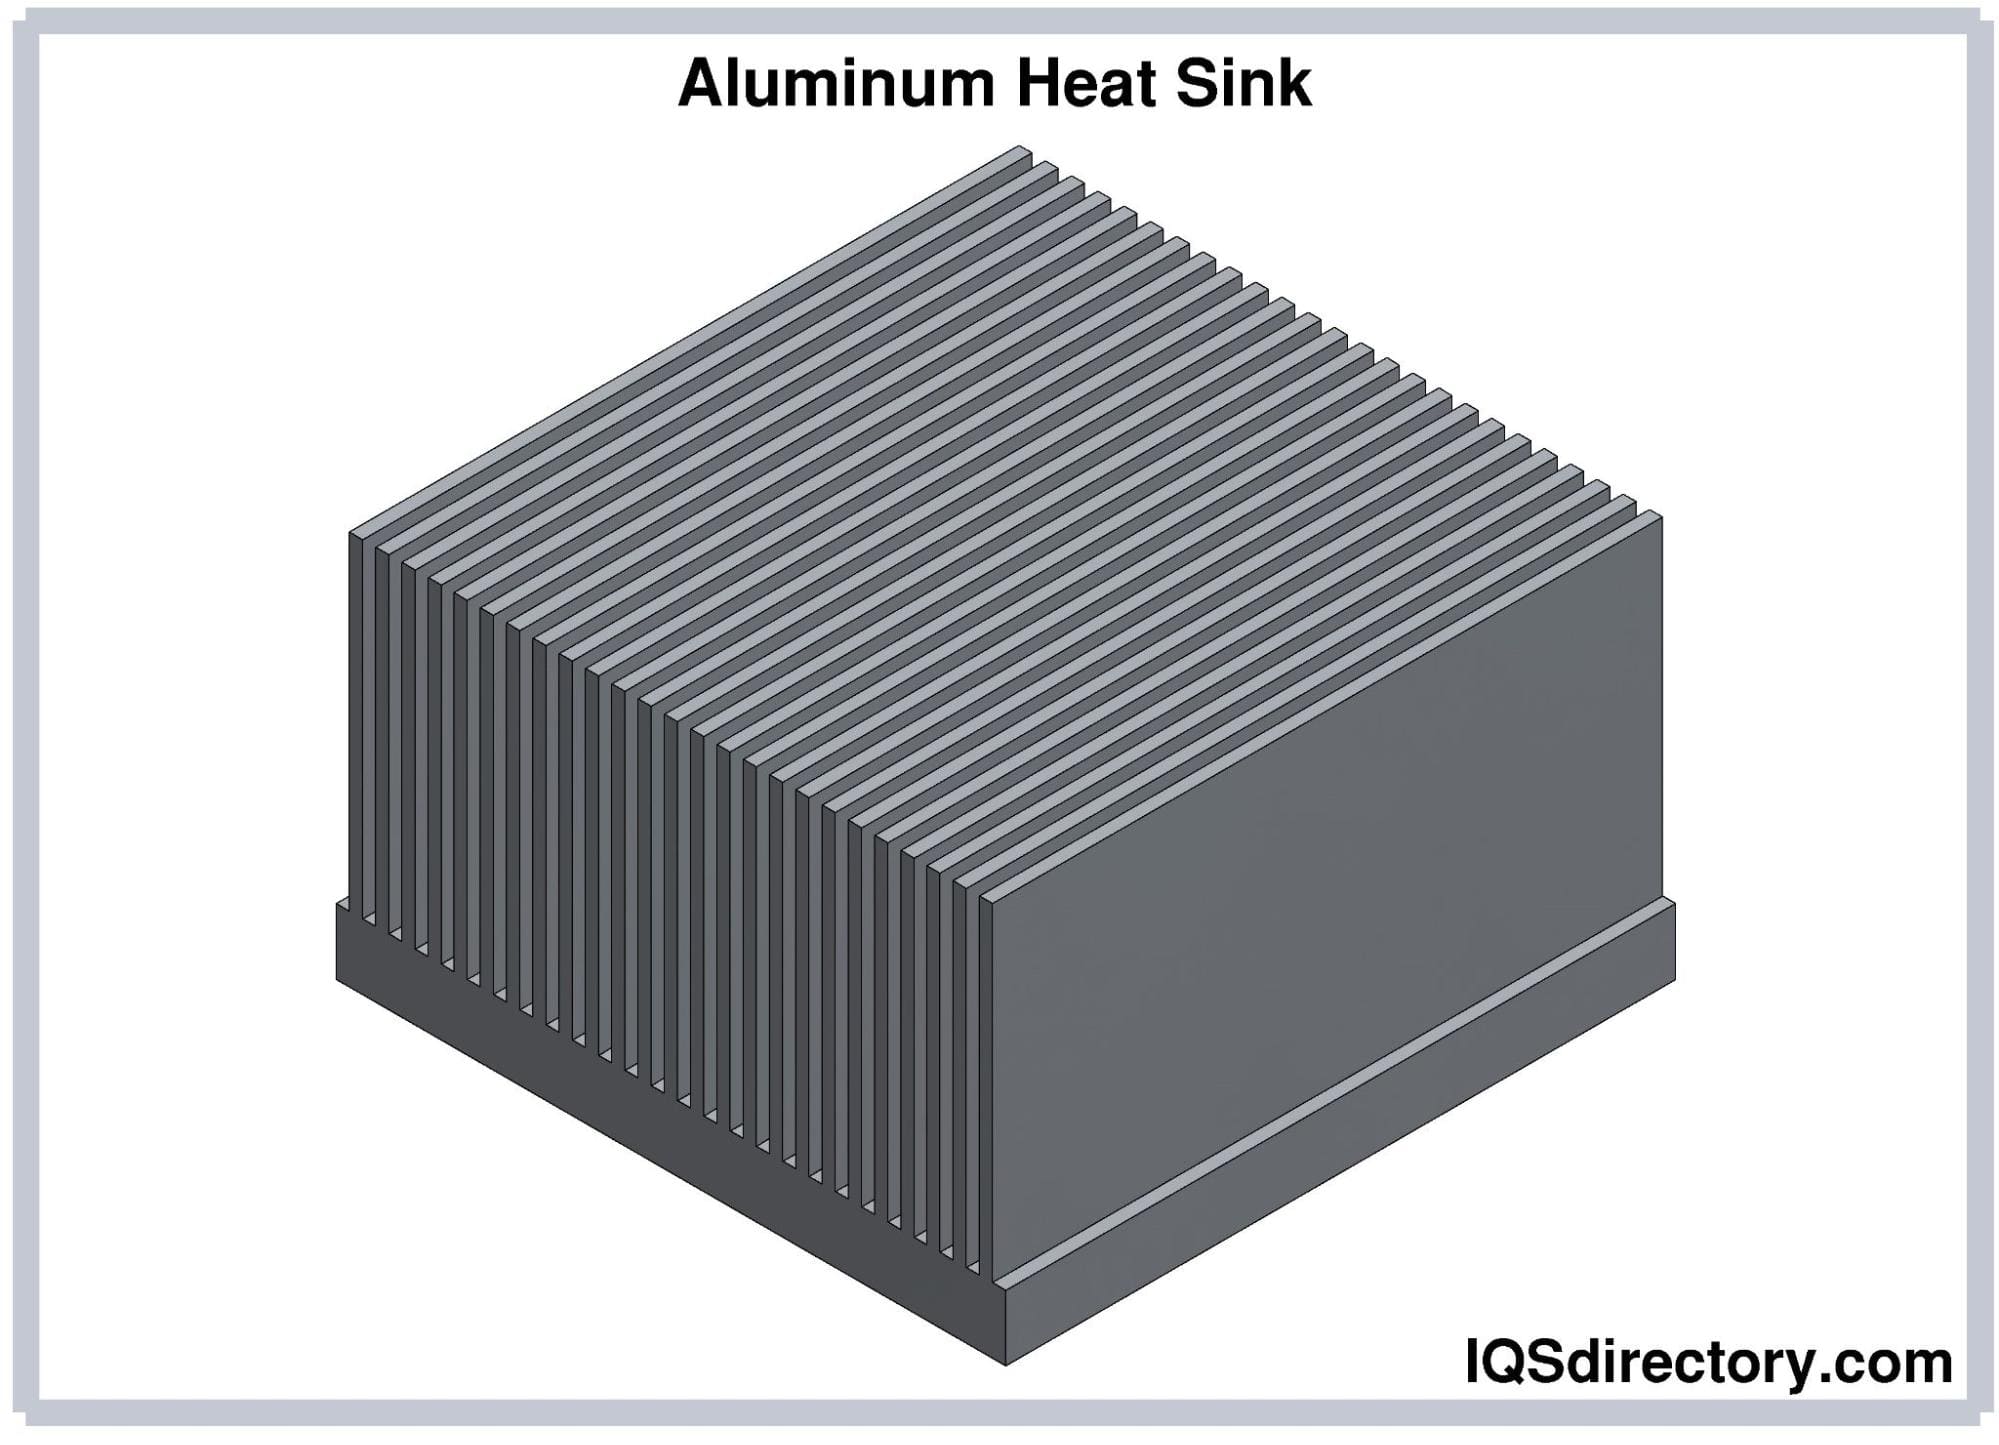 Aluminum Heat Sink